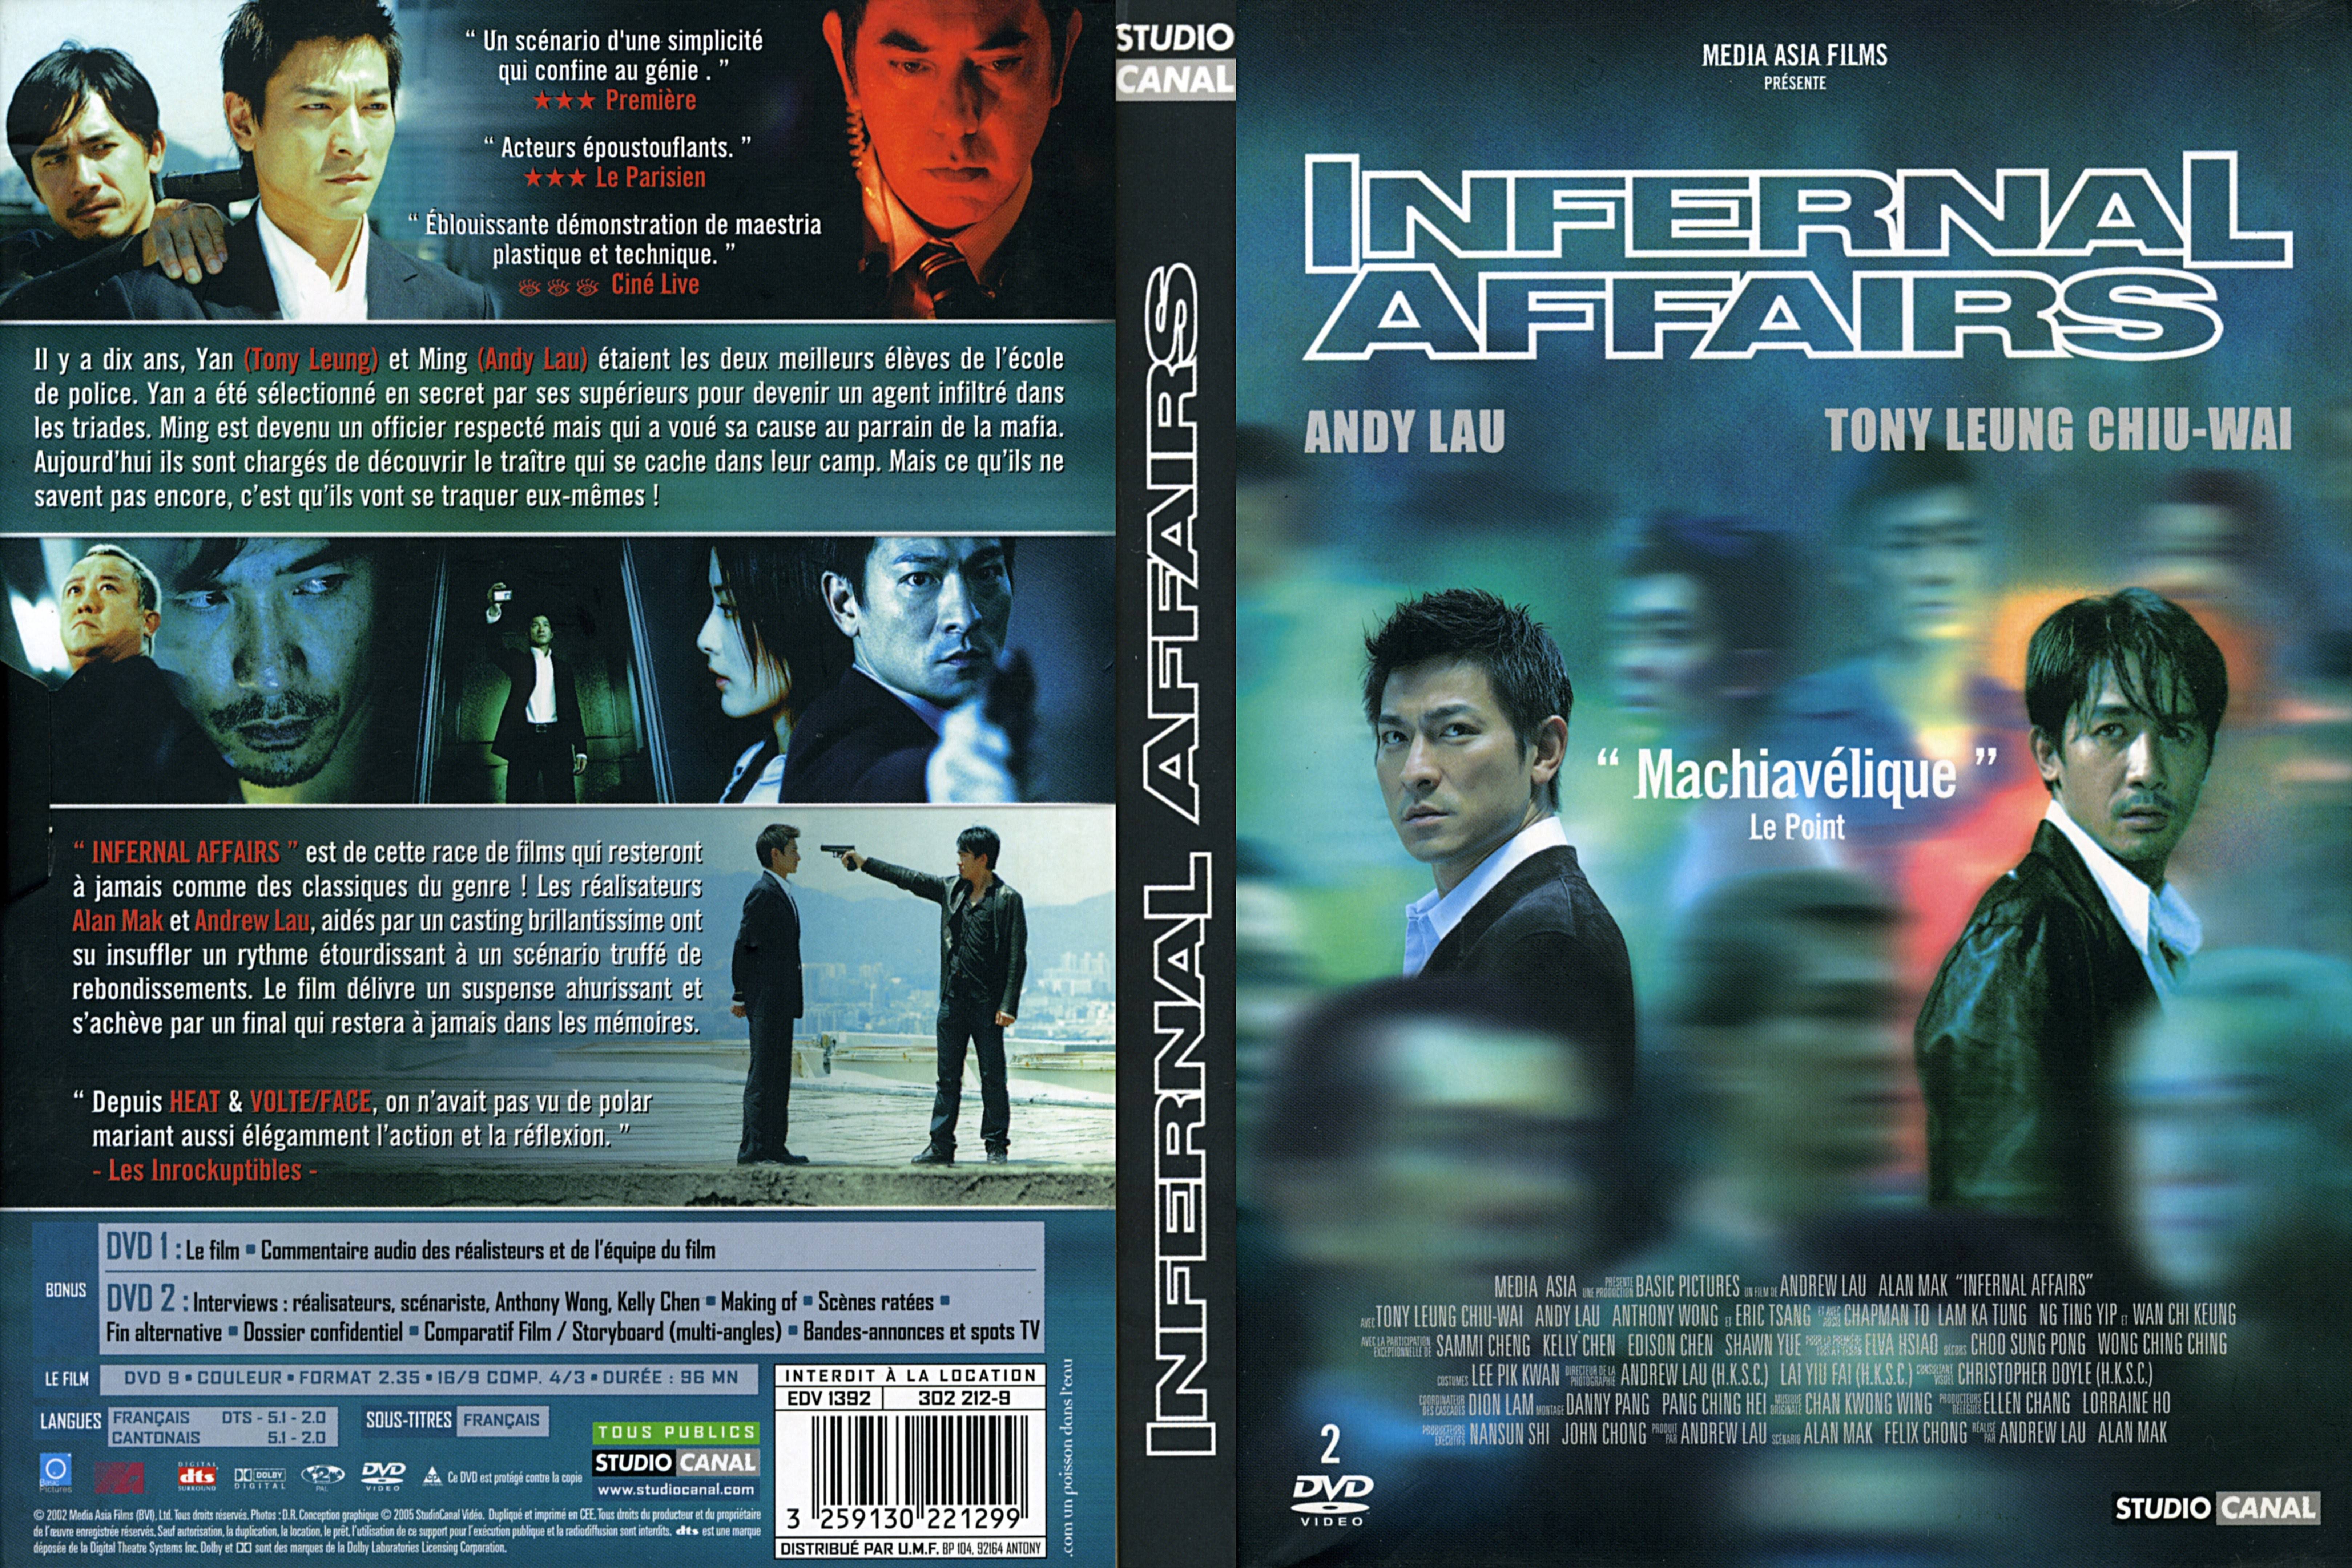 Jaquette DVD Infernal affairs v2